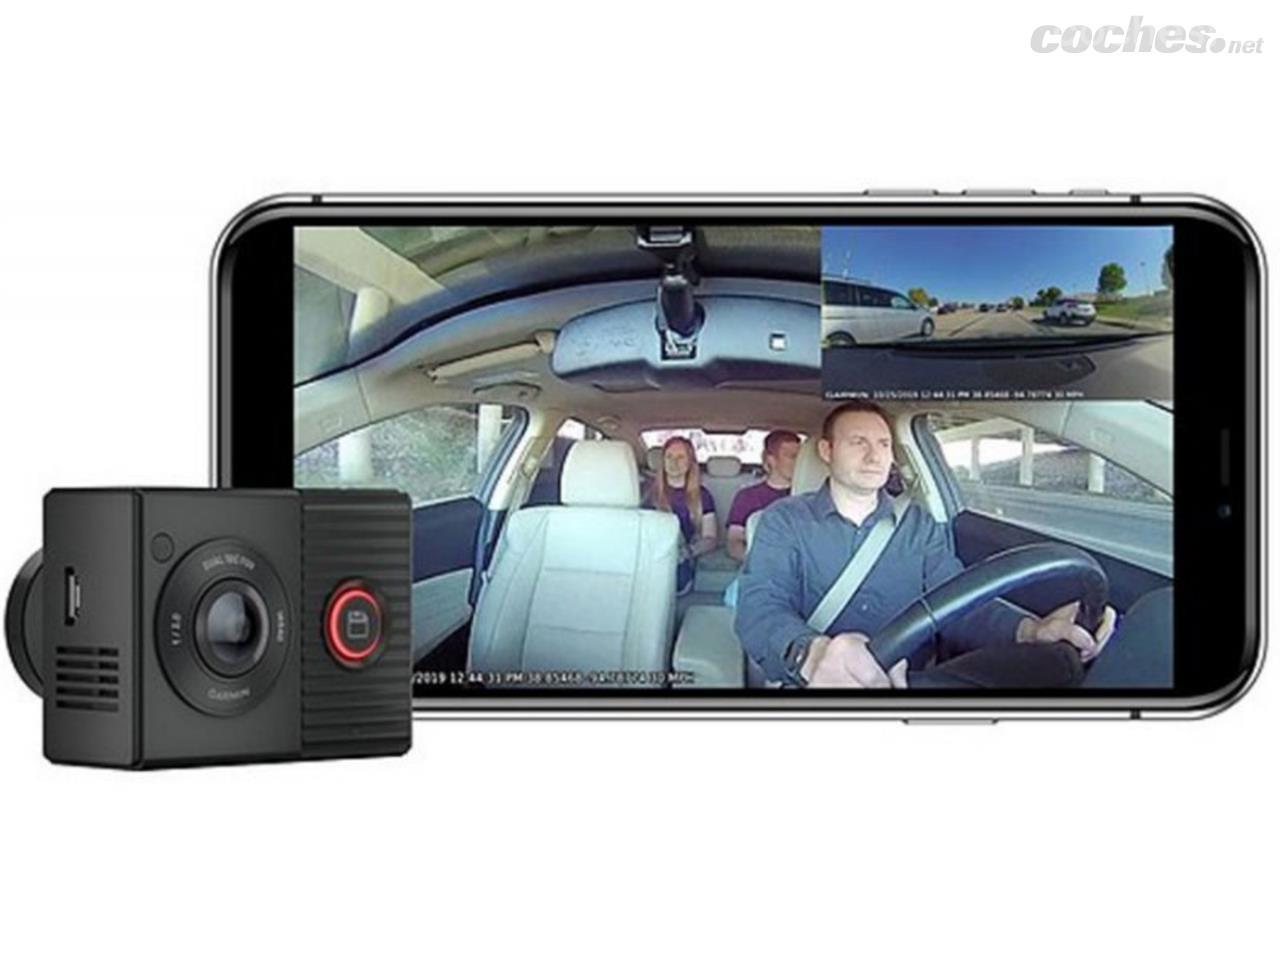 Es legal llevar una cámara en mi coche para grabar un accidente?